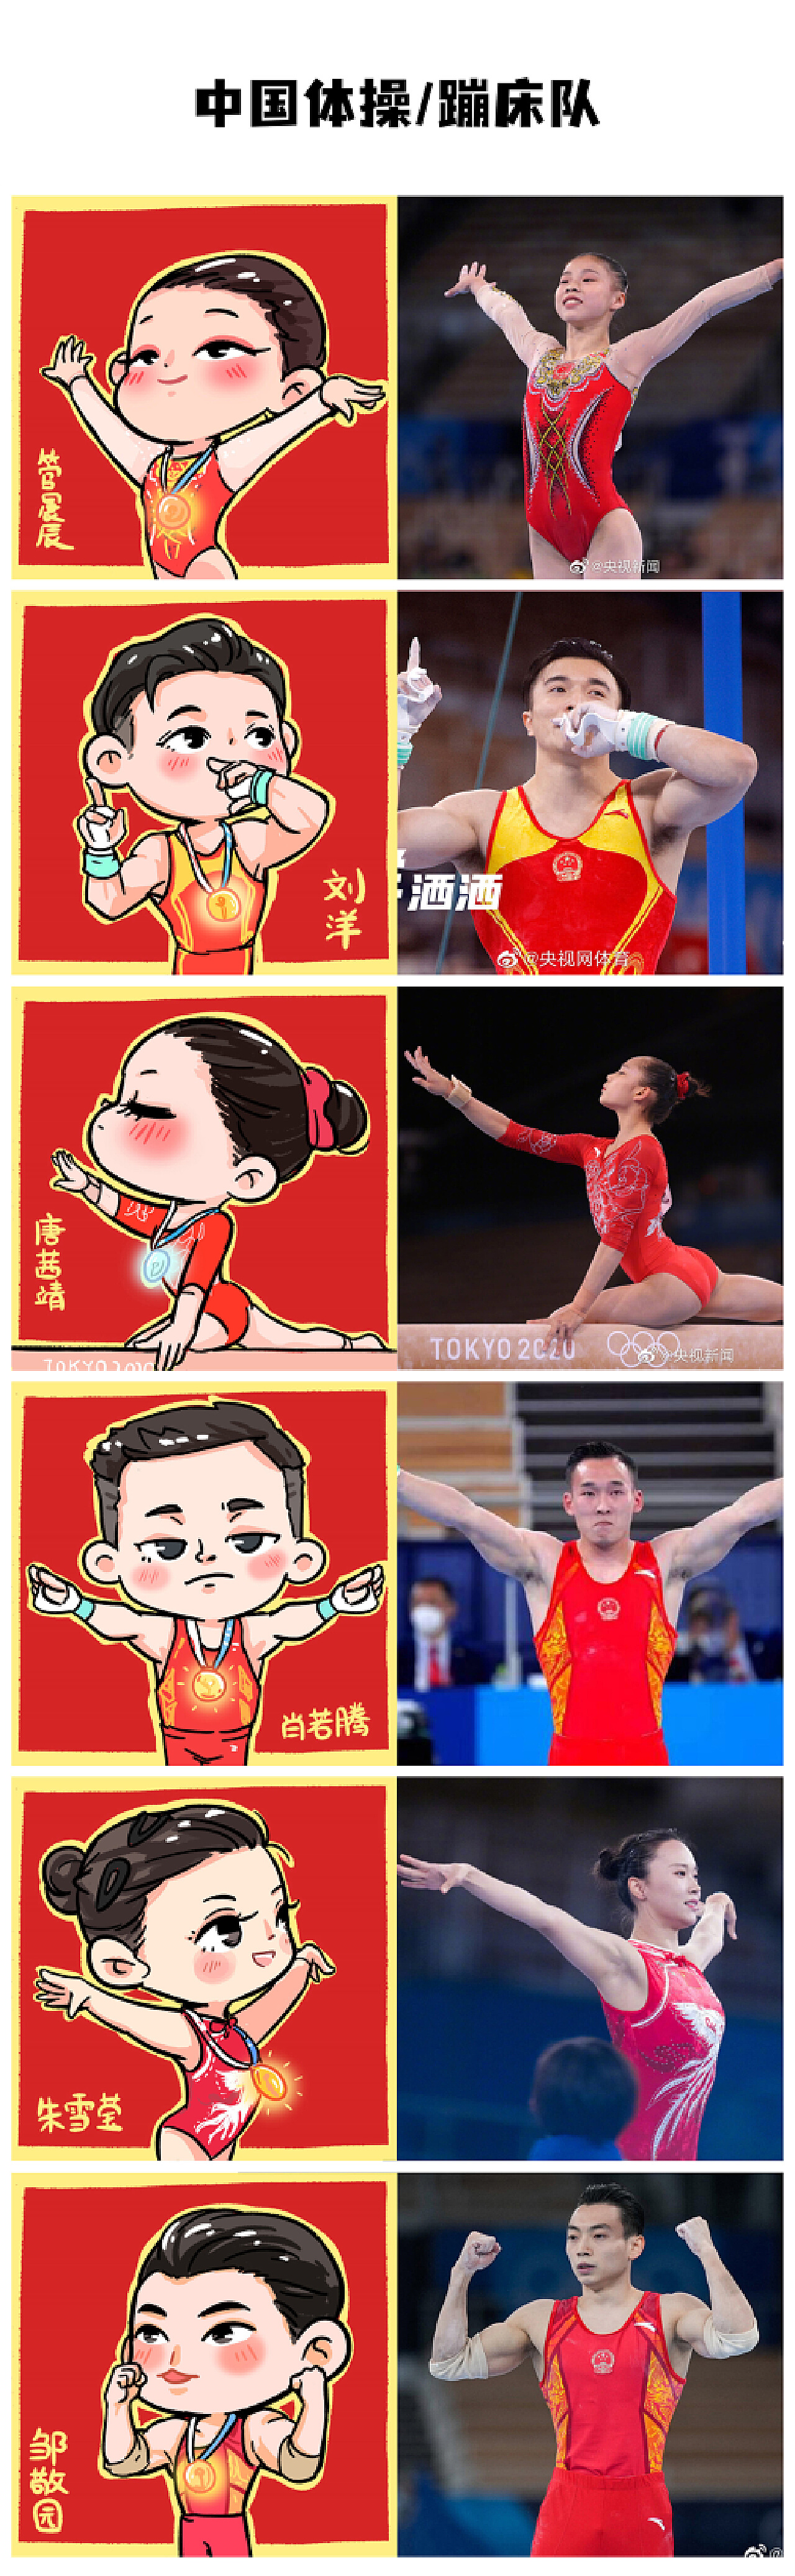 作者用画笔记录下了多幅冬奥会中国奥运健儿们的荣耀时刻